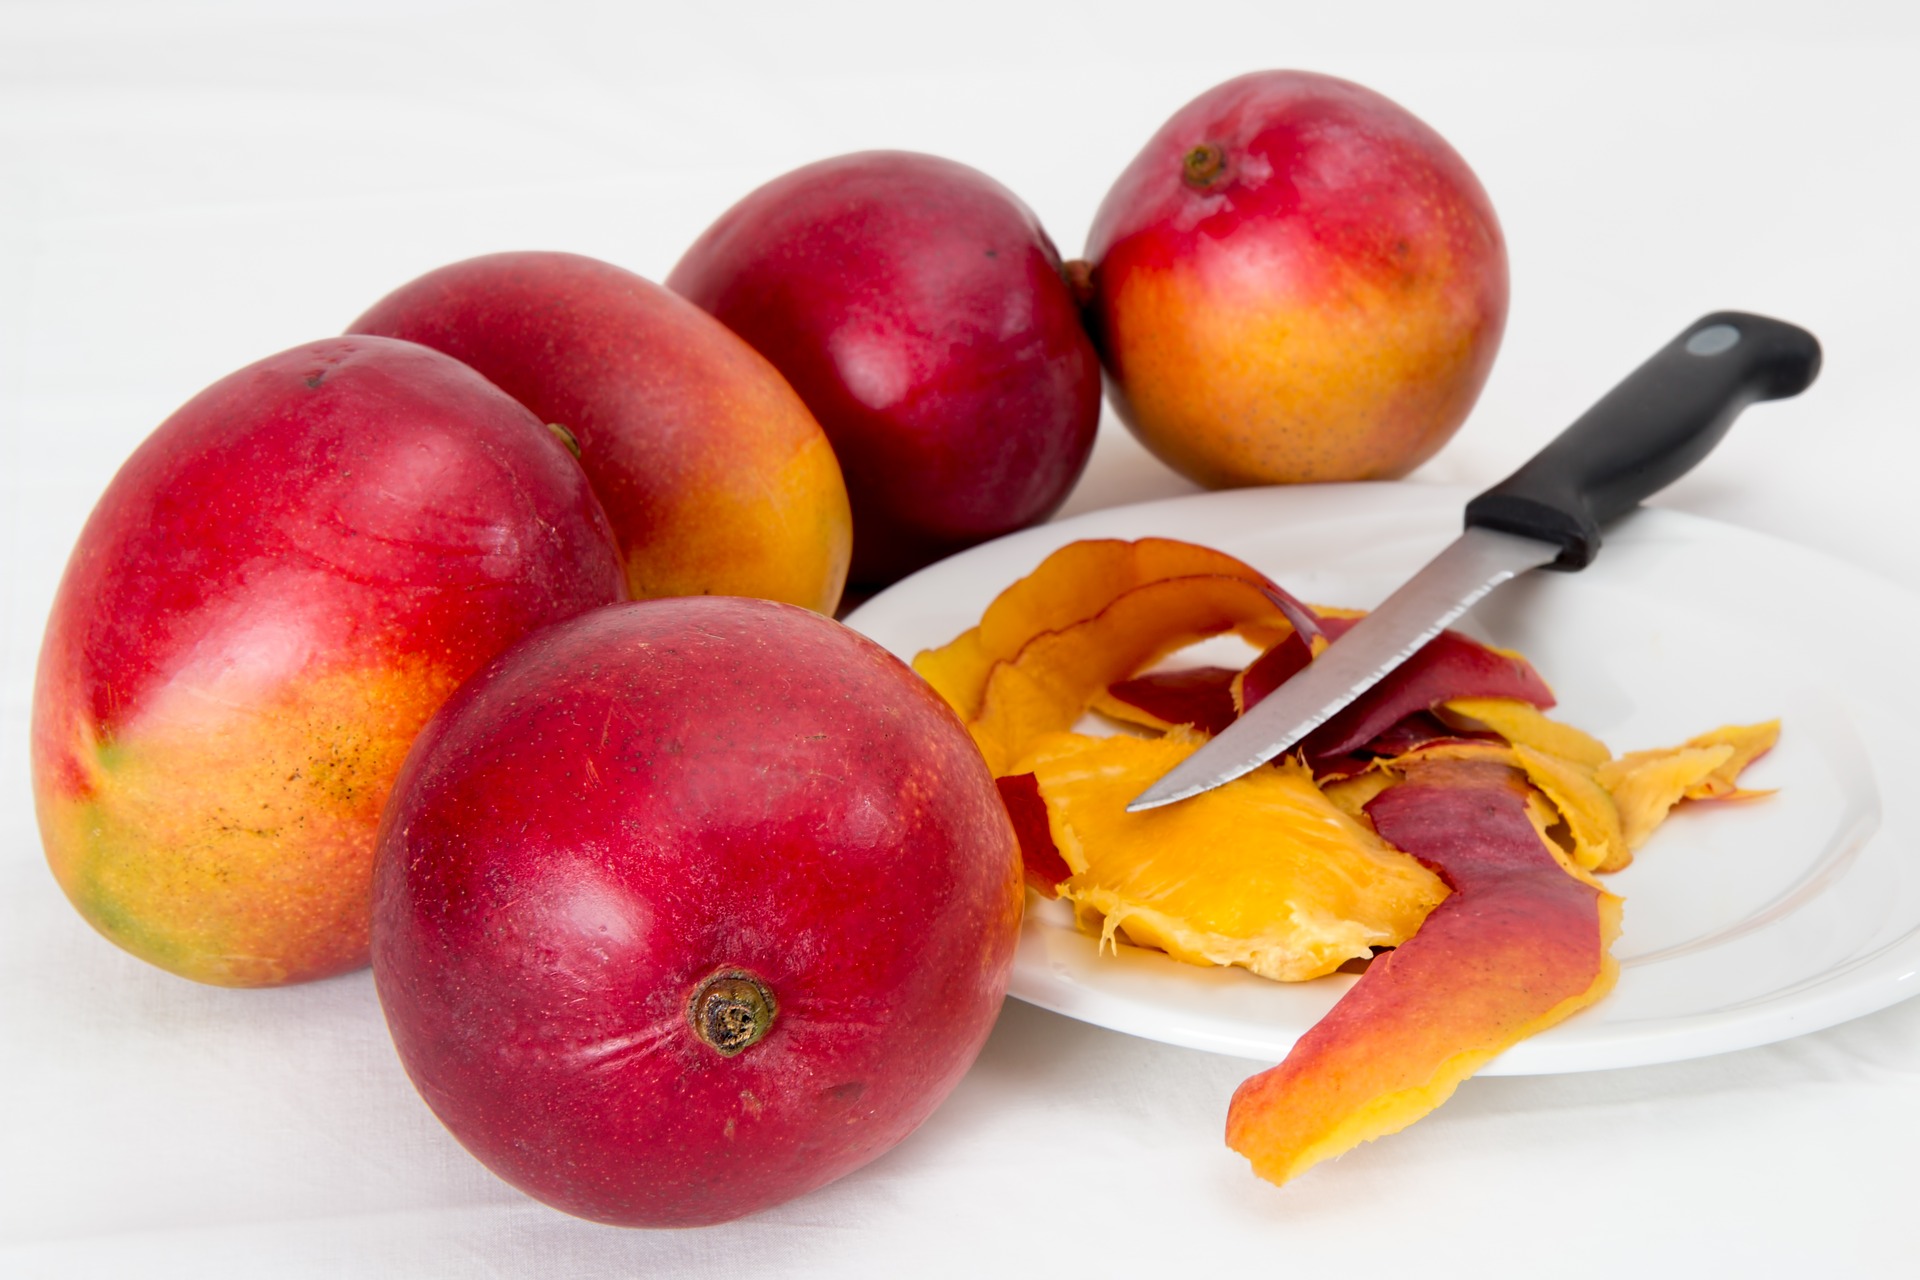 El mango es una fruta cn propiedades beneficiosas para la salud. (Foto Prensa Libre: Servicios).